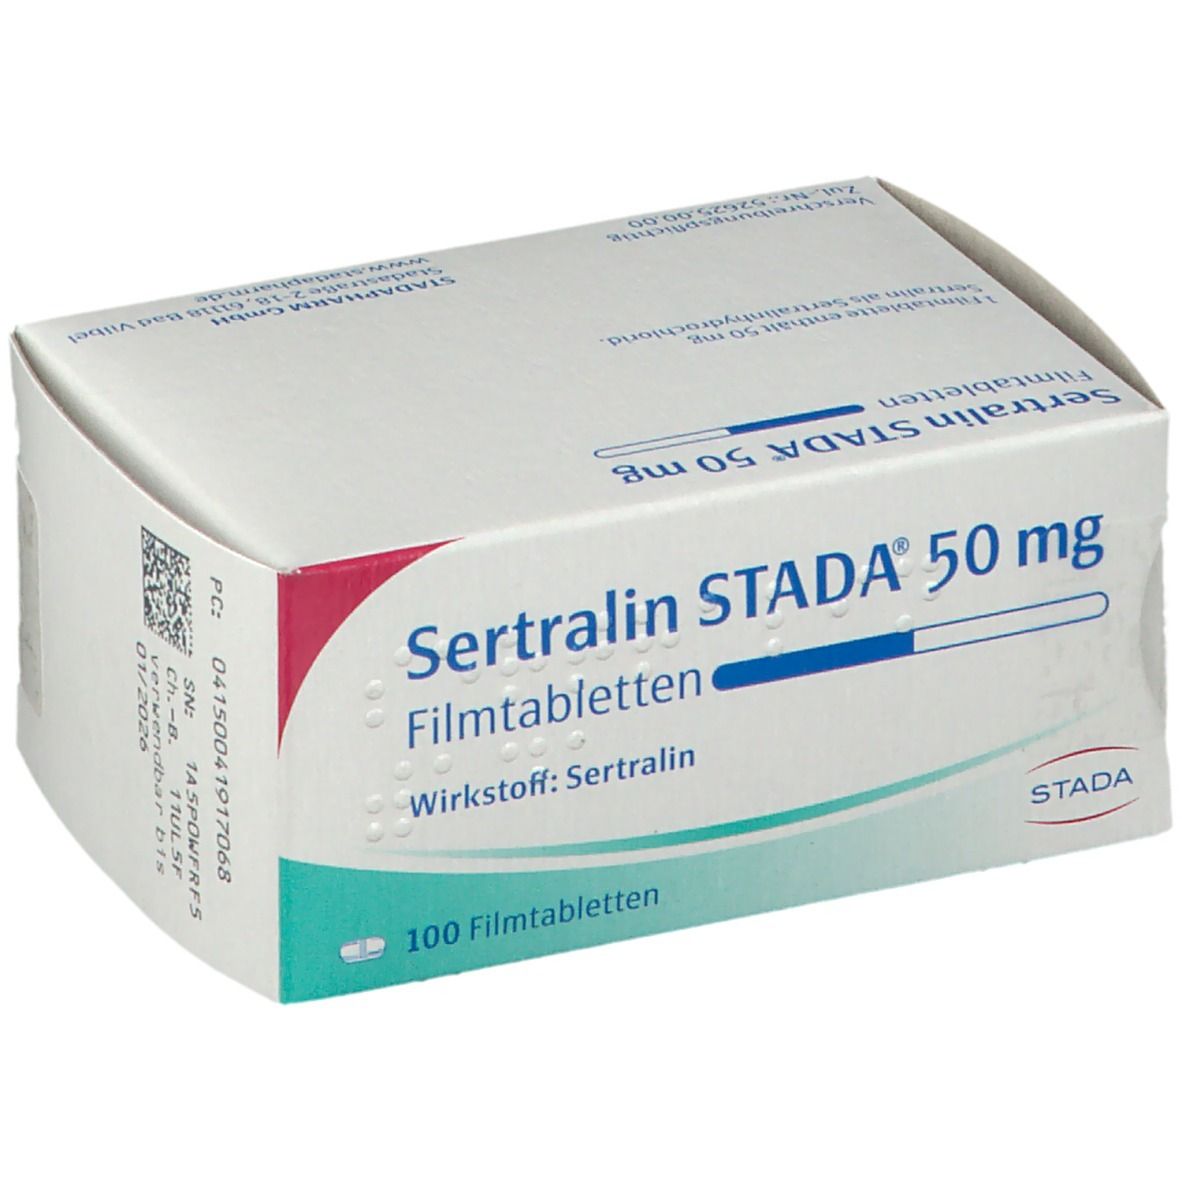 Sertralin STADA® 50 mg